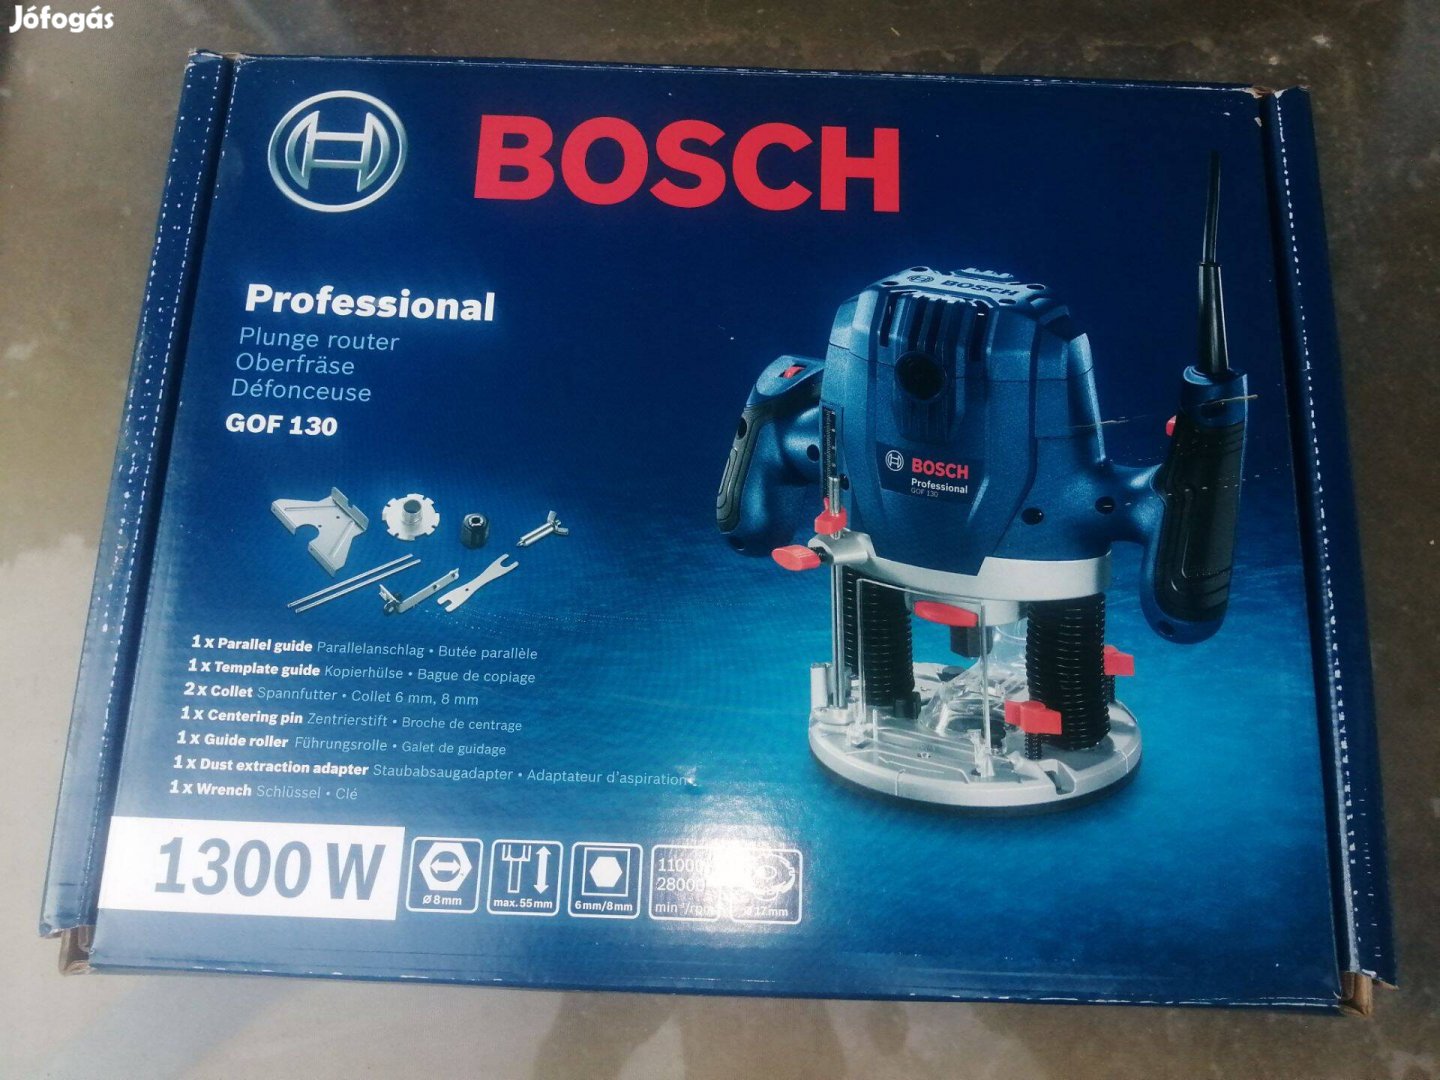 Bosch Gof 130 marógép, felsőmaró - Új!